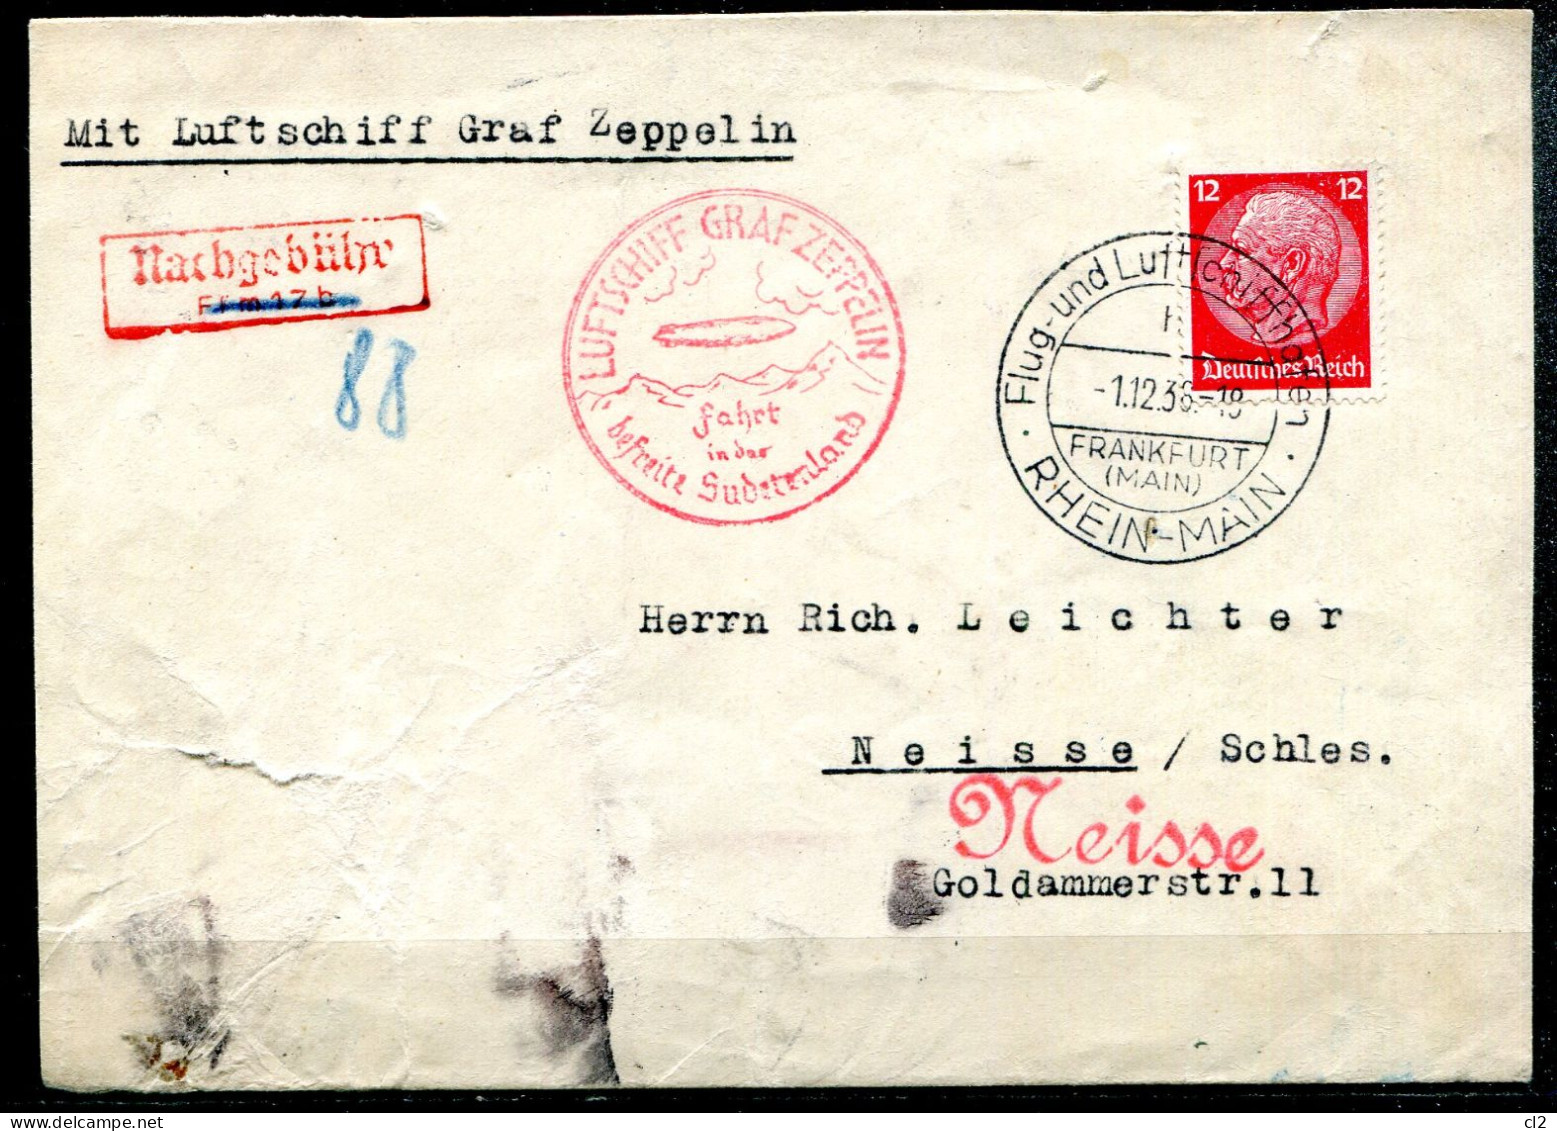 ALLEMAGNE - 1.12.36 - Luftschiff Graf Zeppelin Fahrt In Der Befreite Sudetenland (Frankfurt Nach Neisse/Schles.) - Briefe U. Dokumente